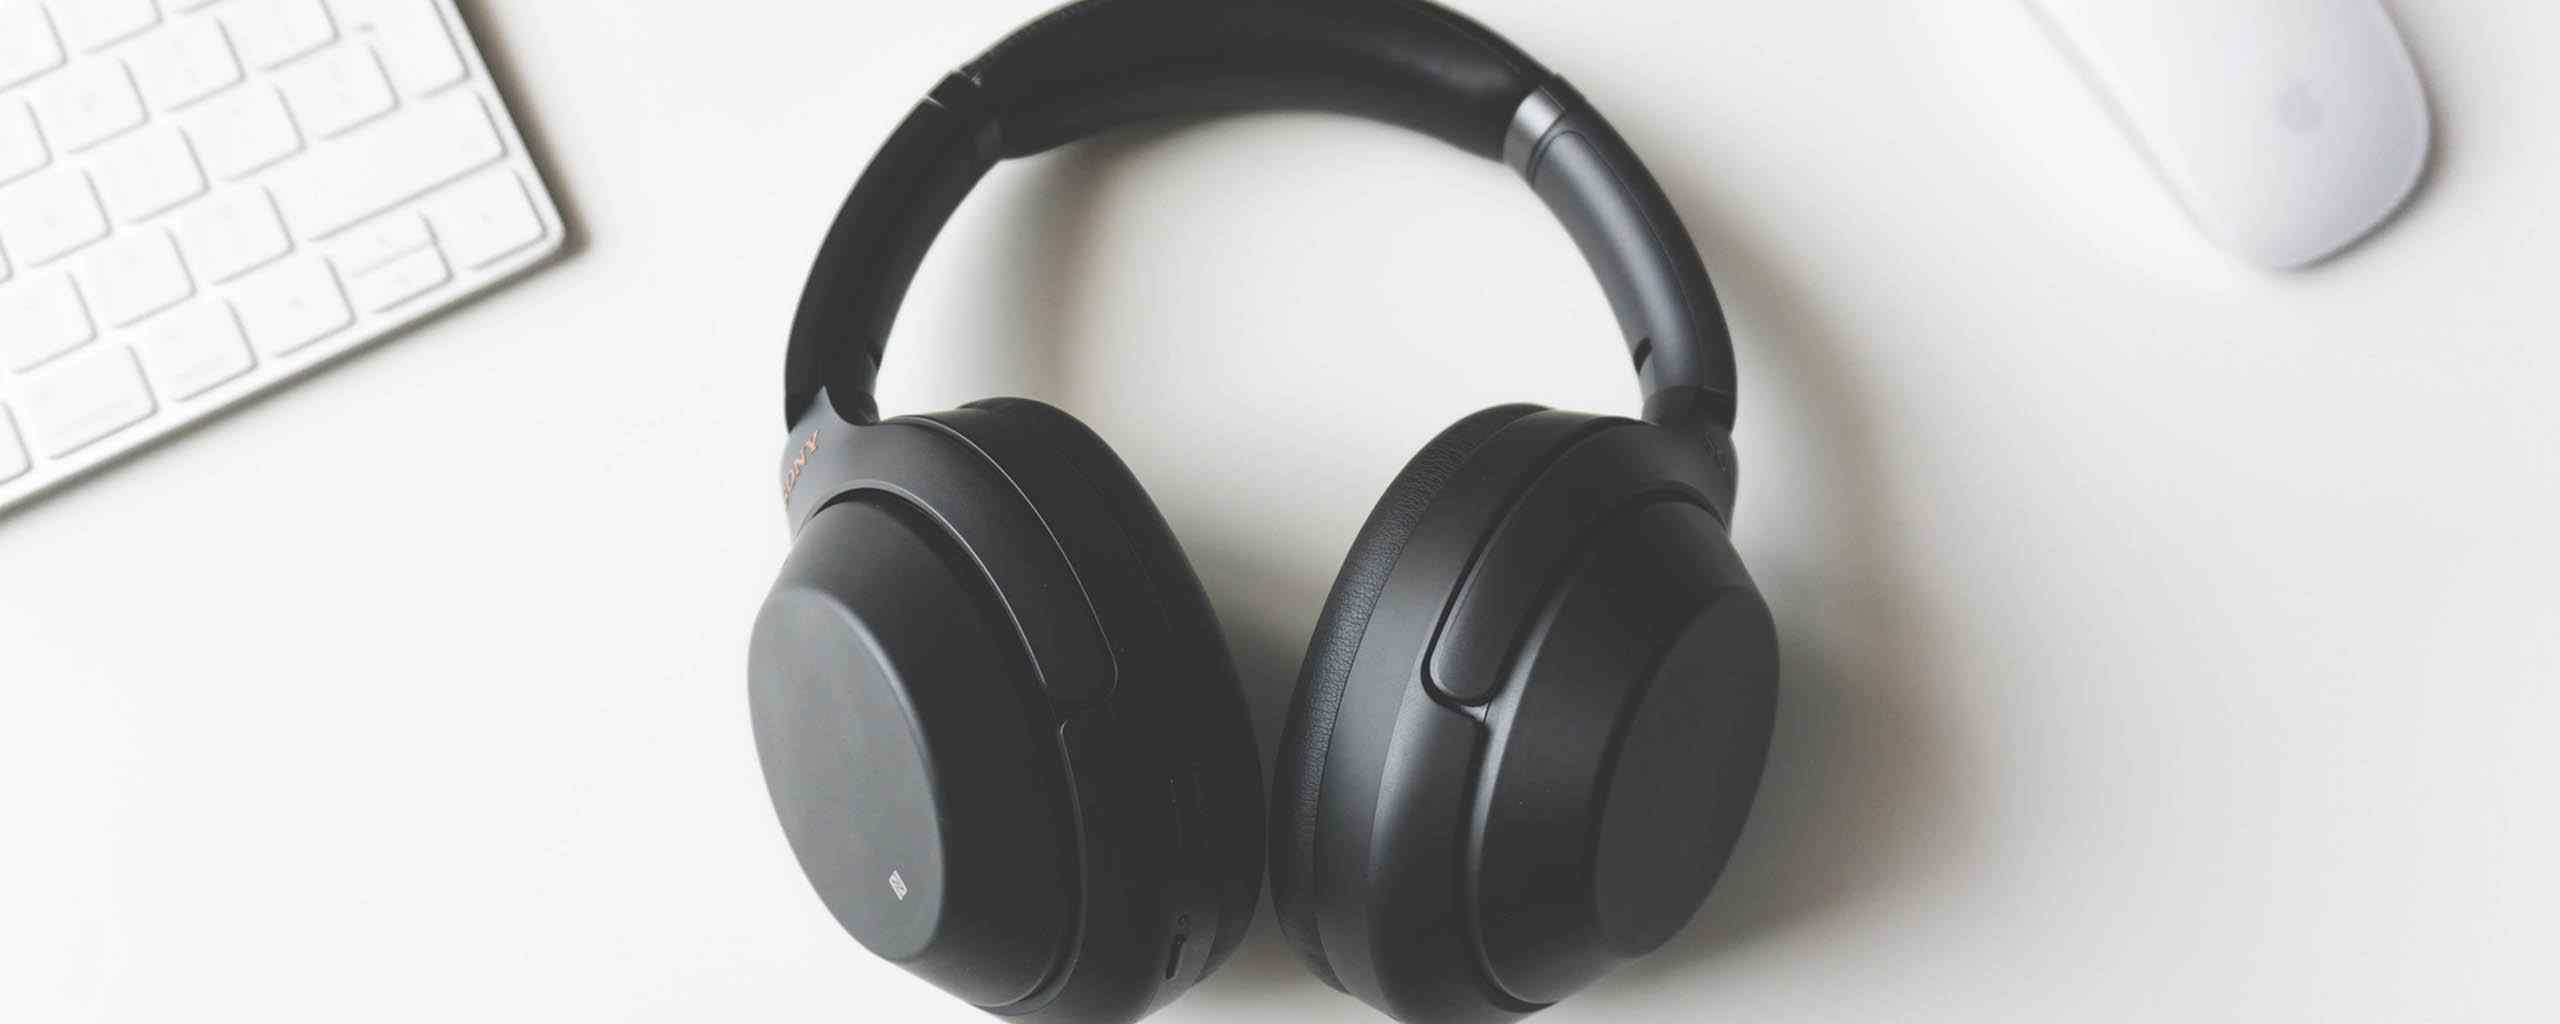 black earphones on a white desk